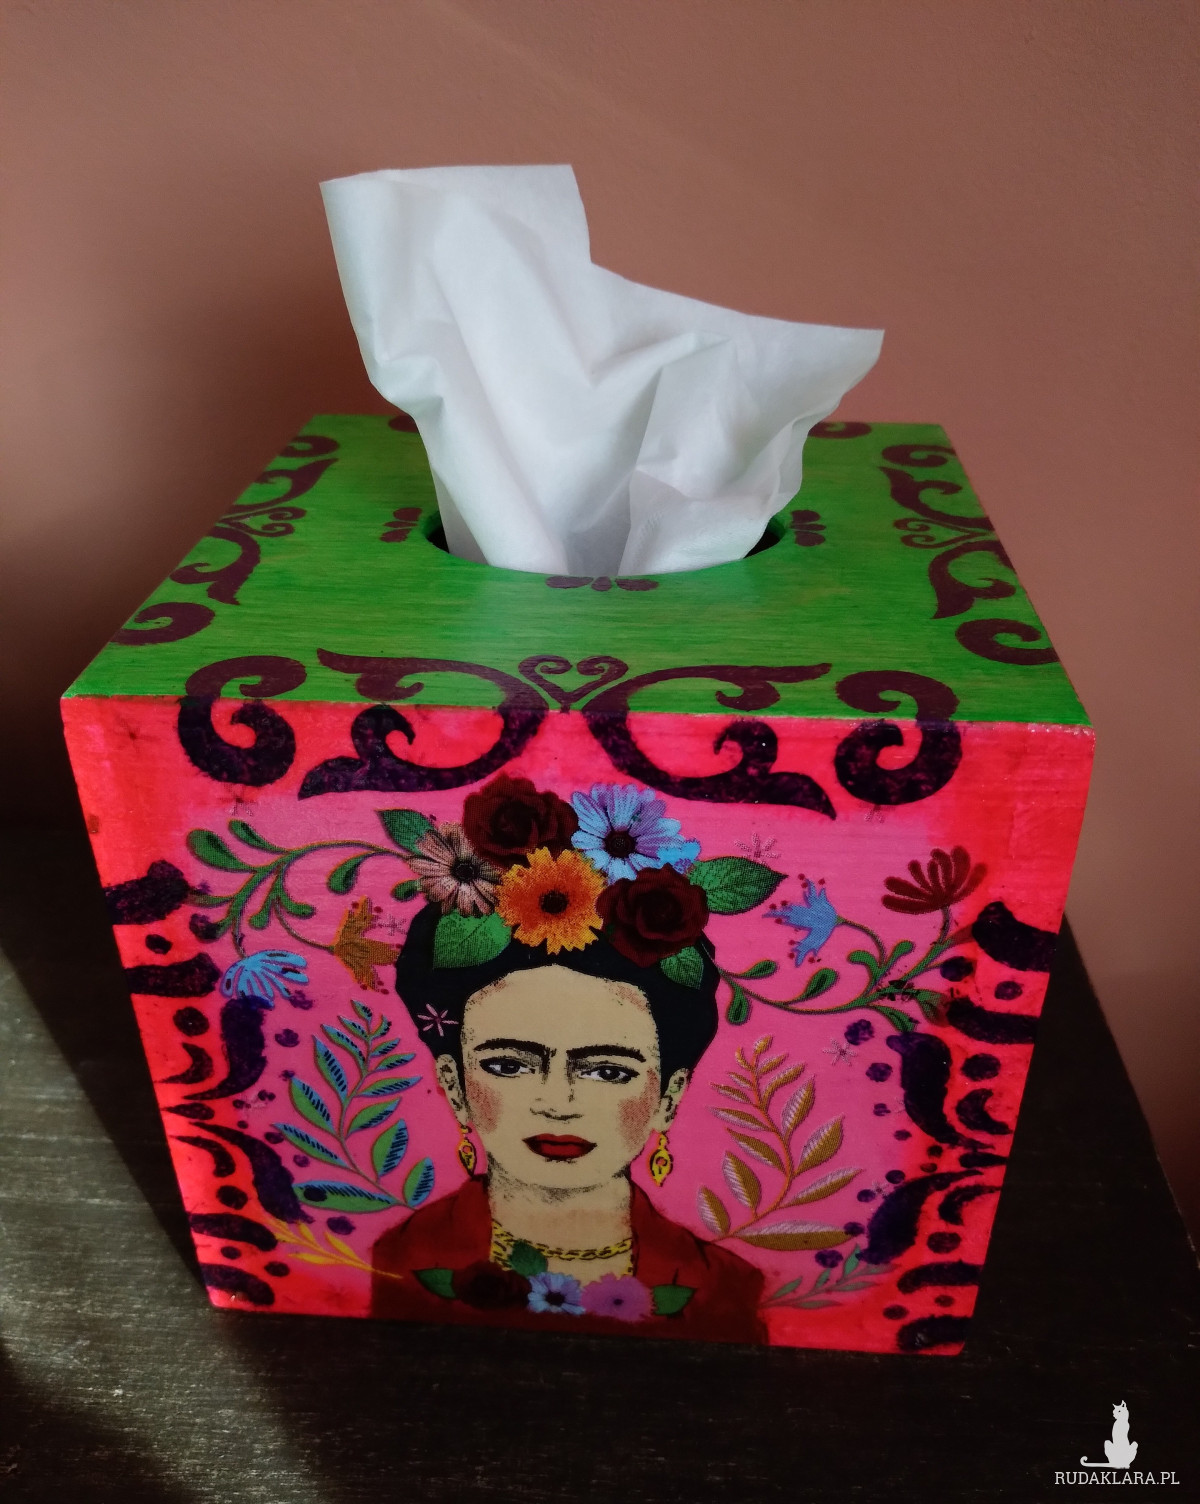 Drewniany kolorowy chustecznik Frida Kahlo klimat Meksyku żywe kolory decoupage